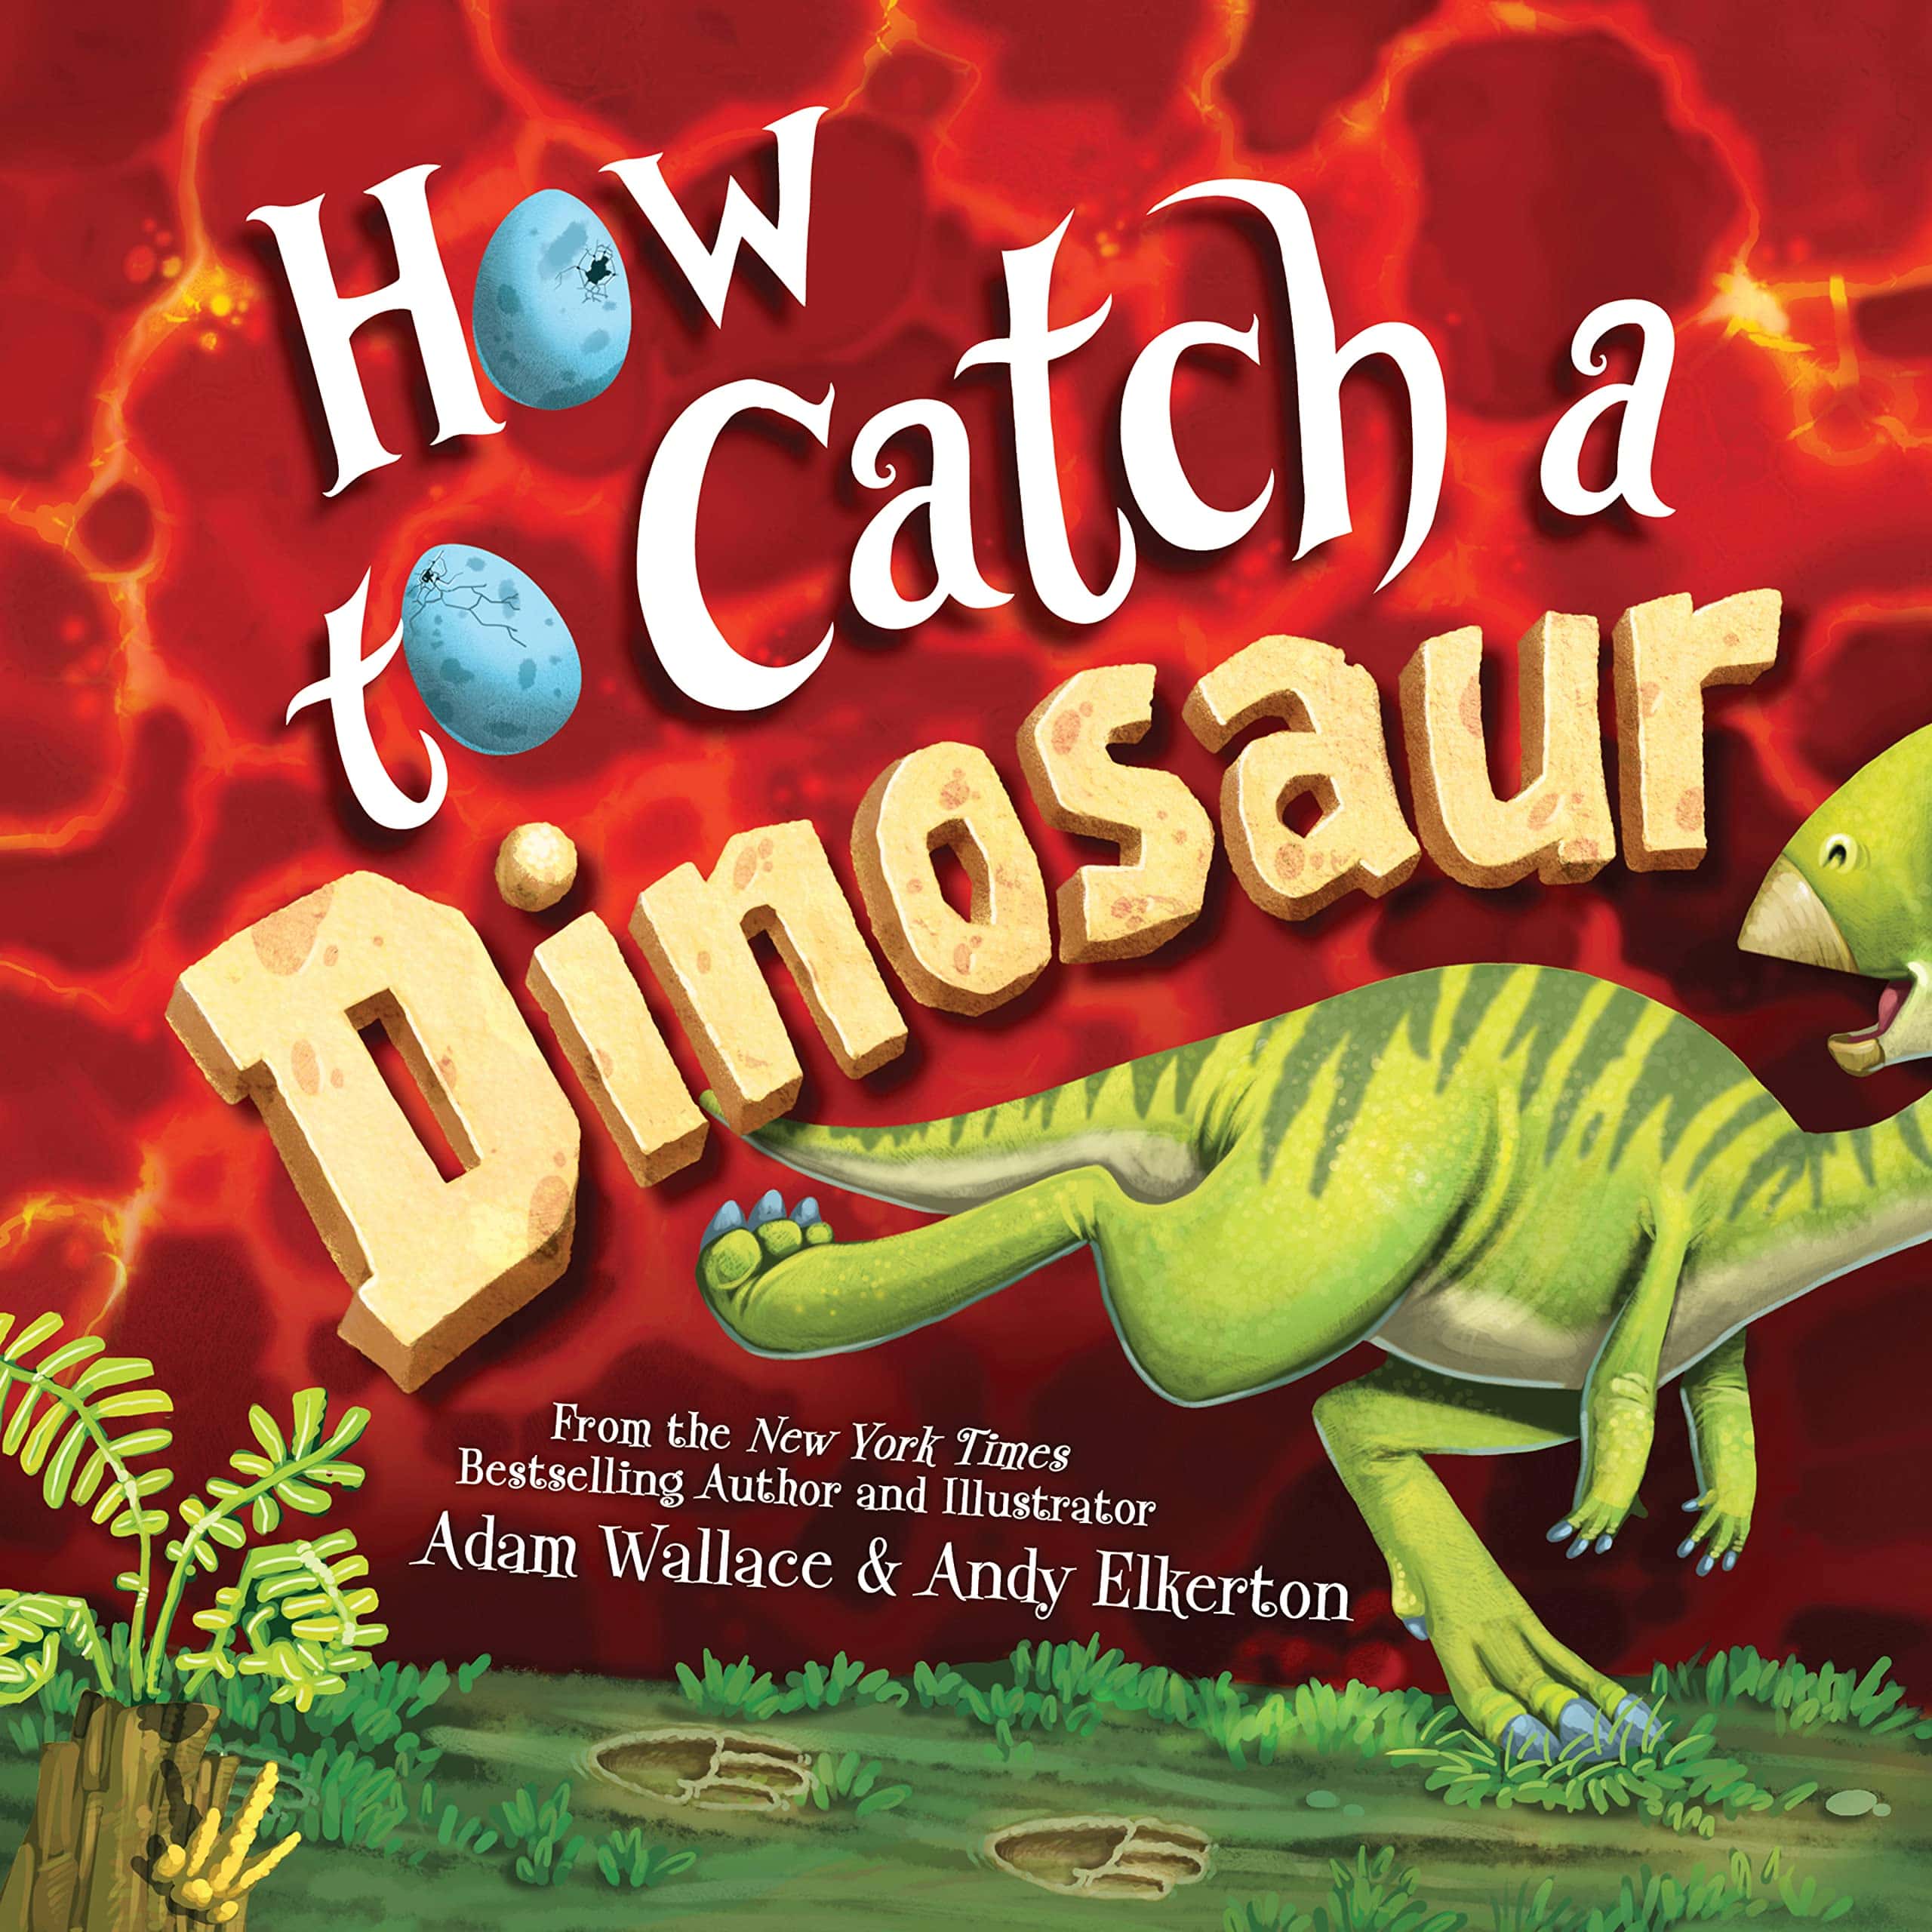 Los mejores libros para niños de 4 años